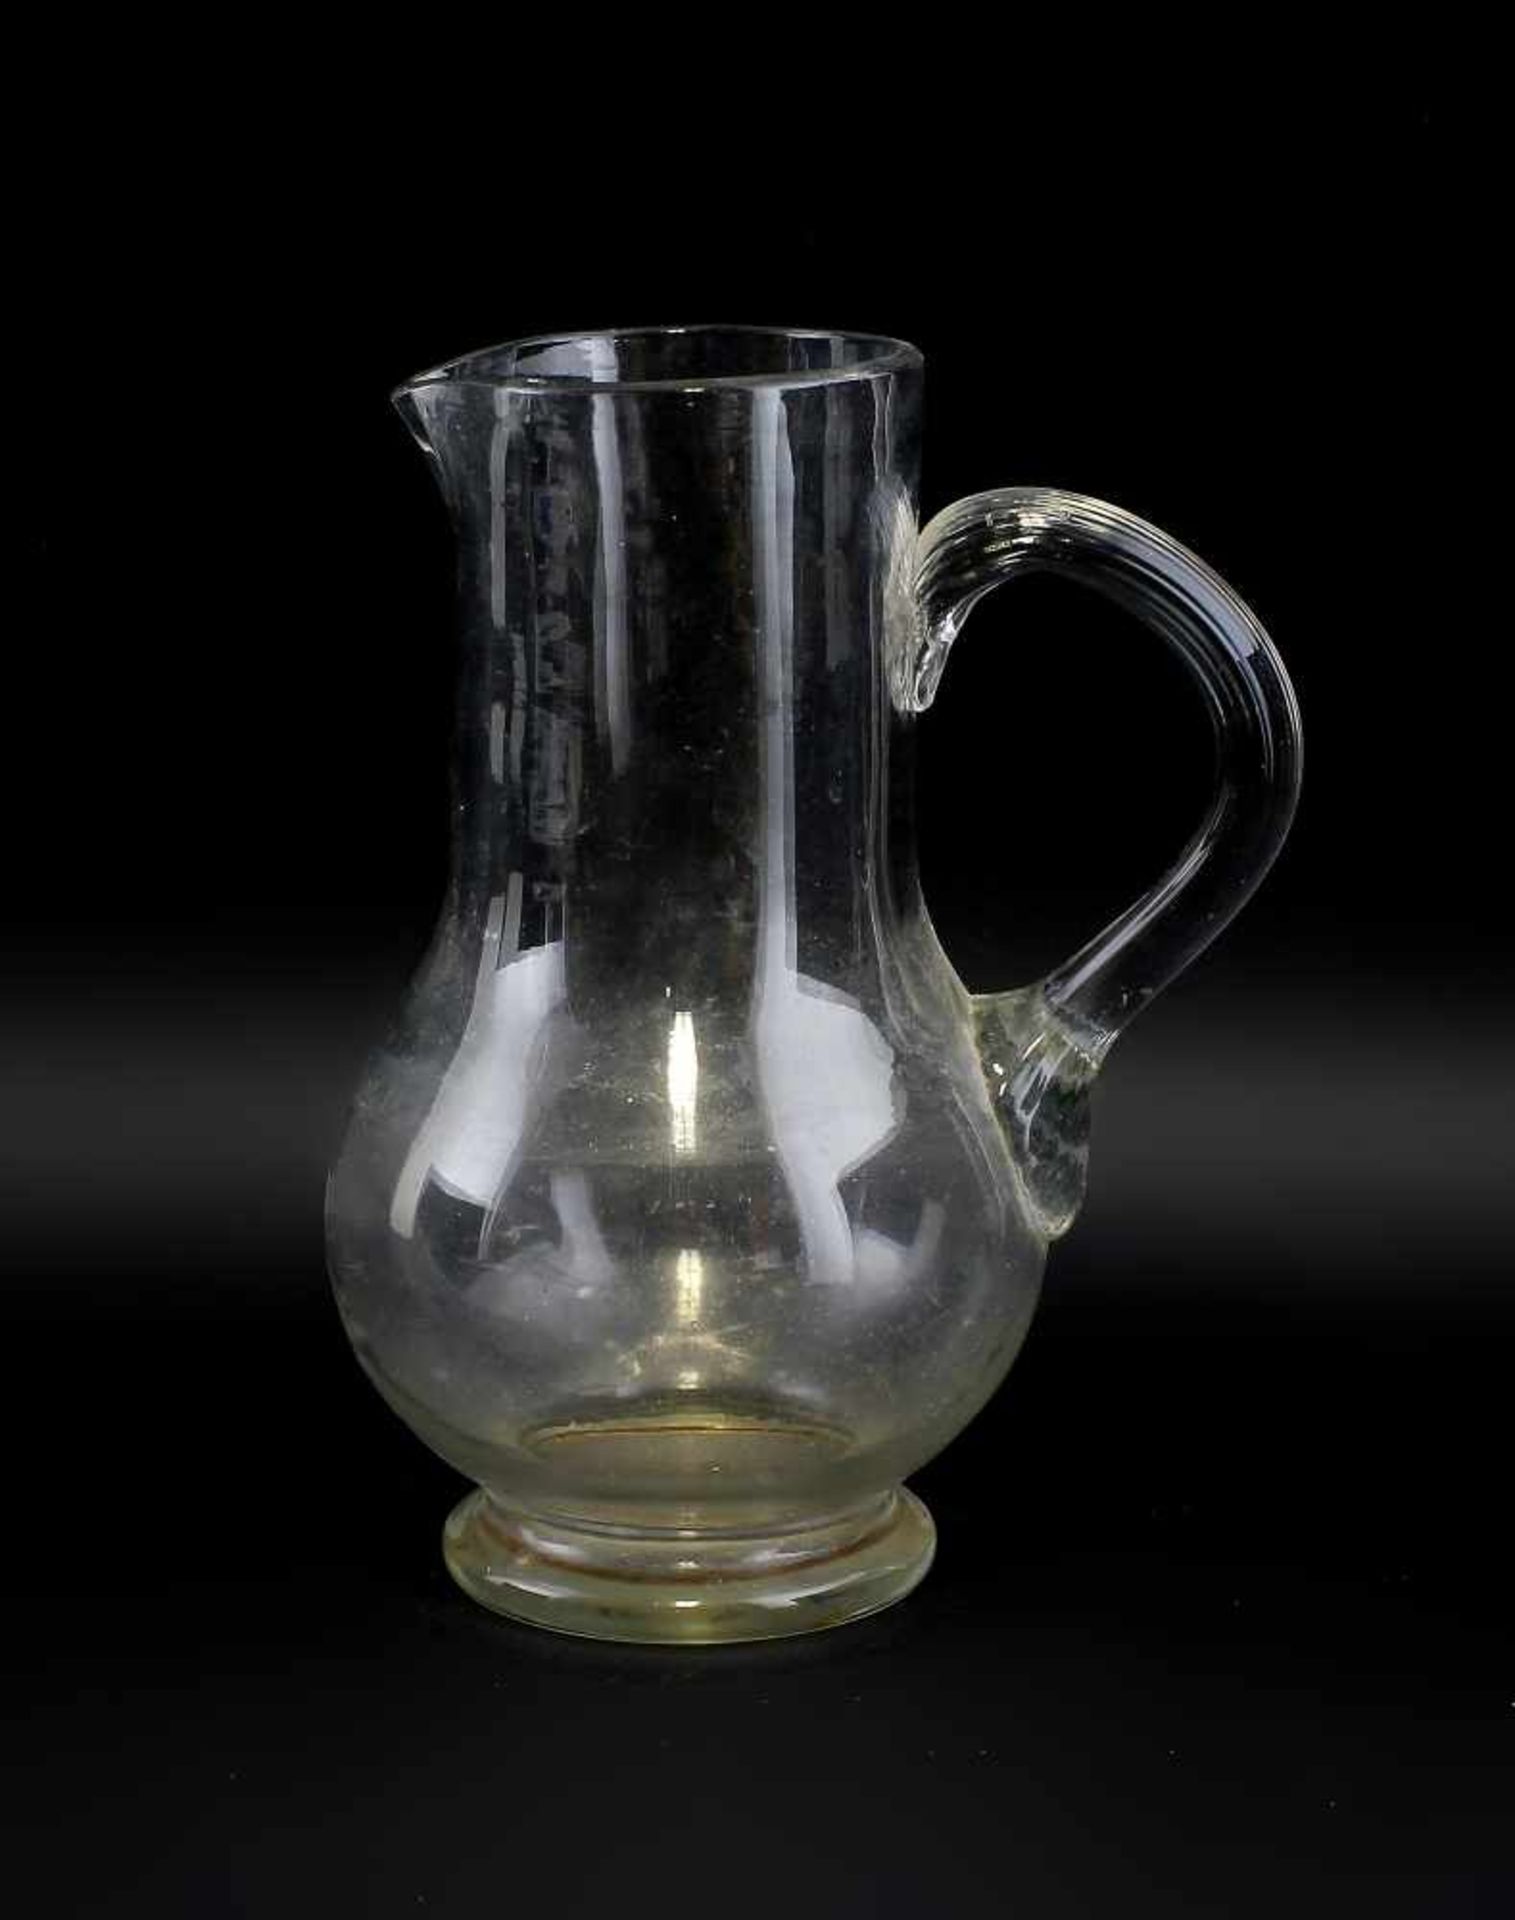 Schenkkrug Historismus. 19.Jh., farbloses, dickwandiges Glas formgeblasen, bauchiger Korpus mit